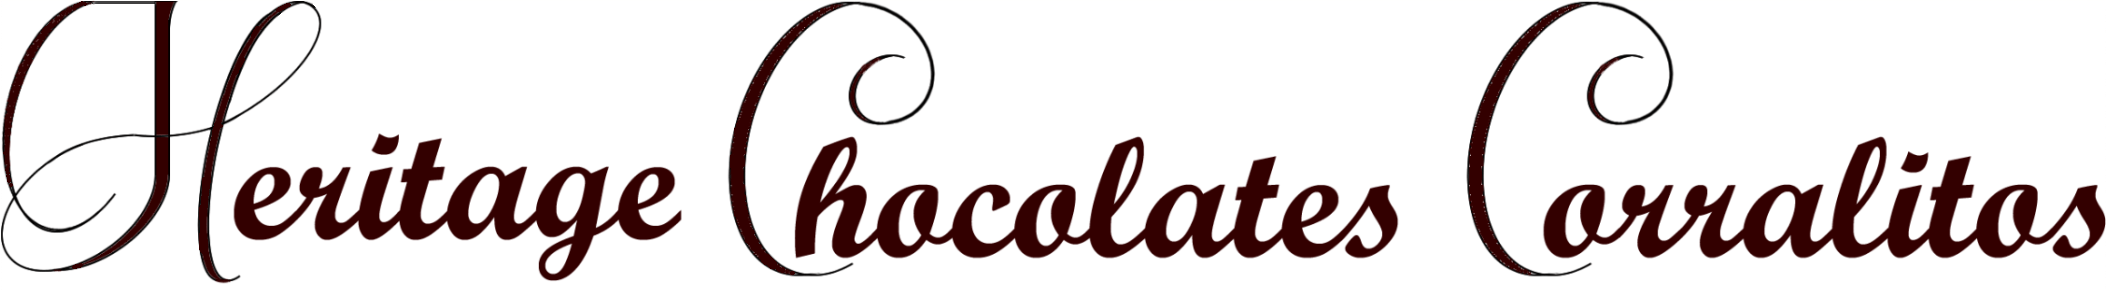 Heritage Chocolate Corralitos logo